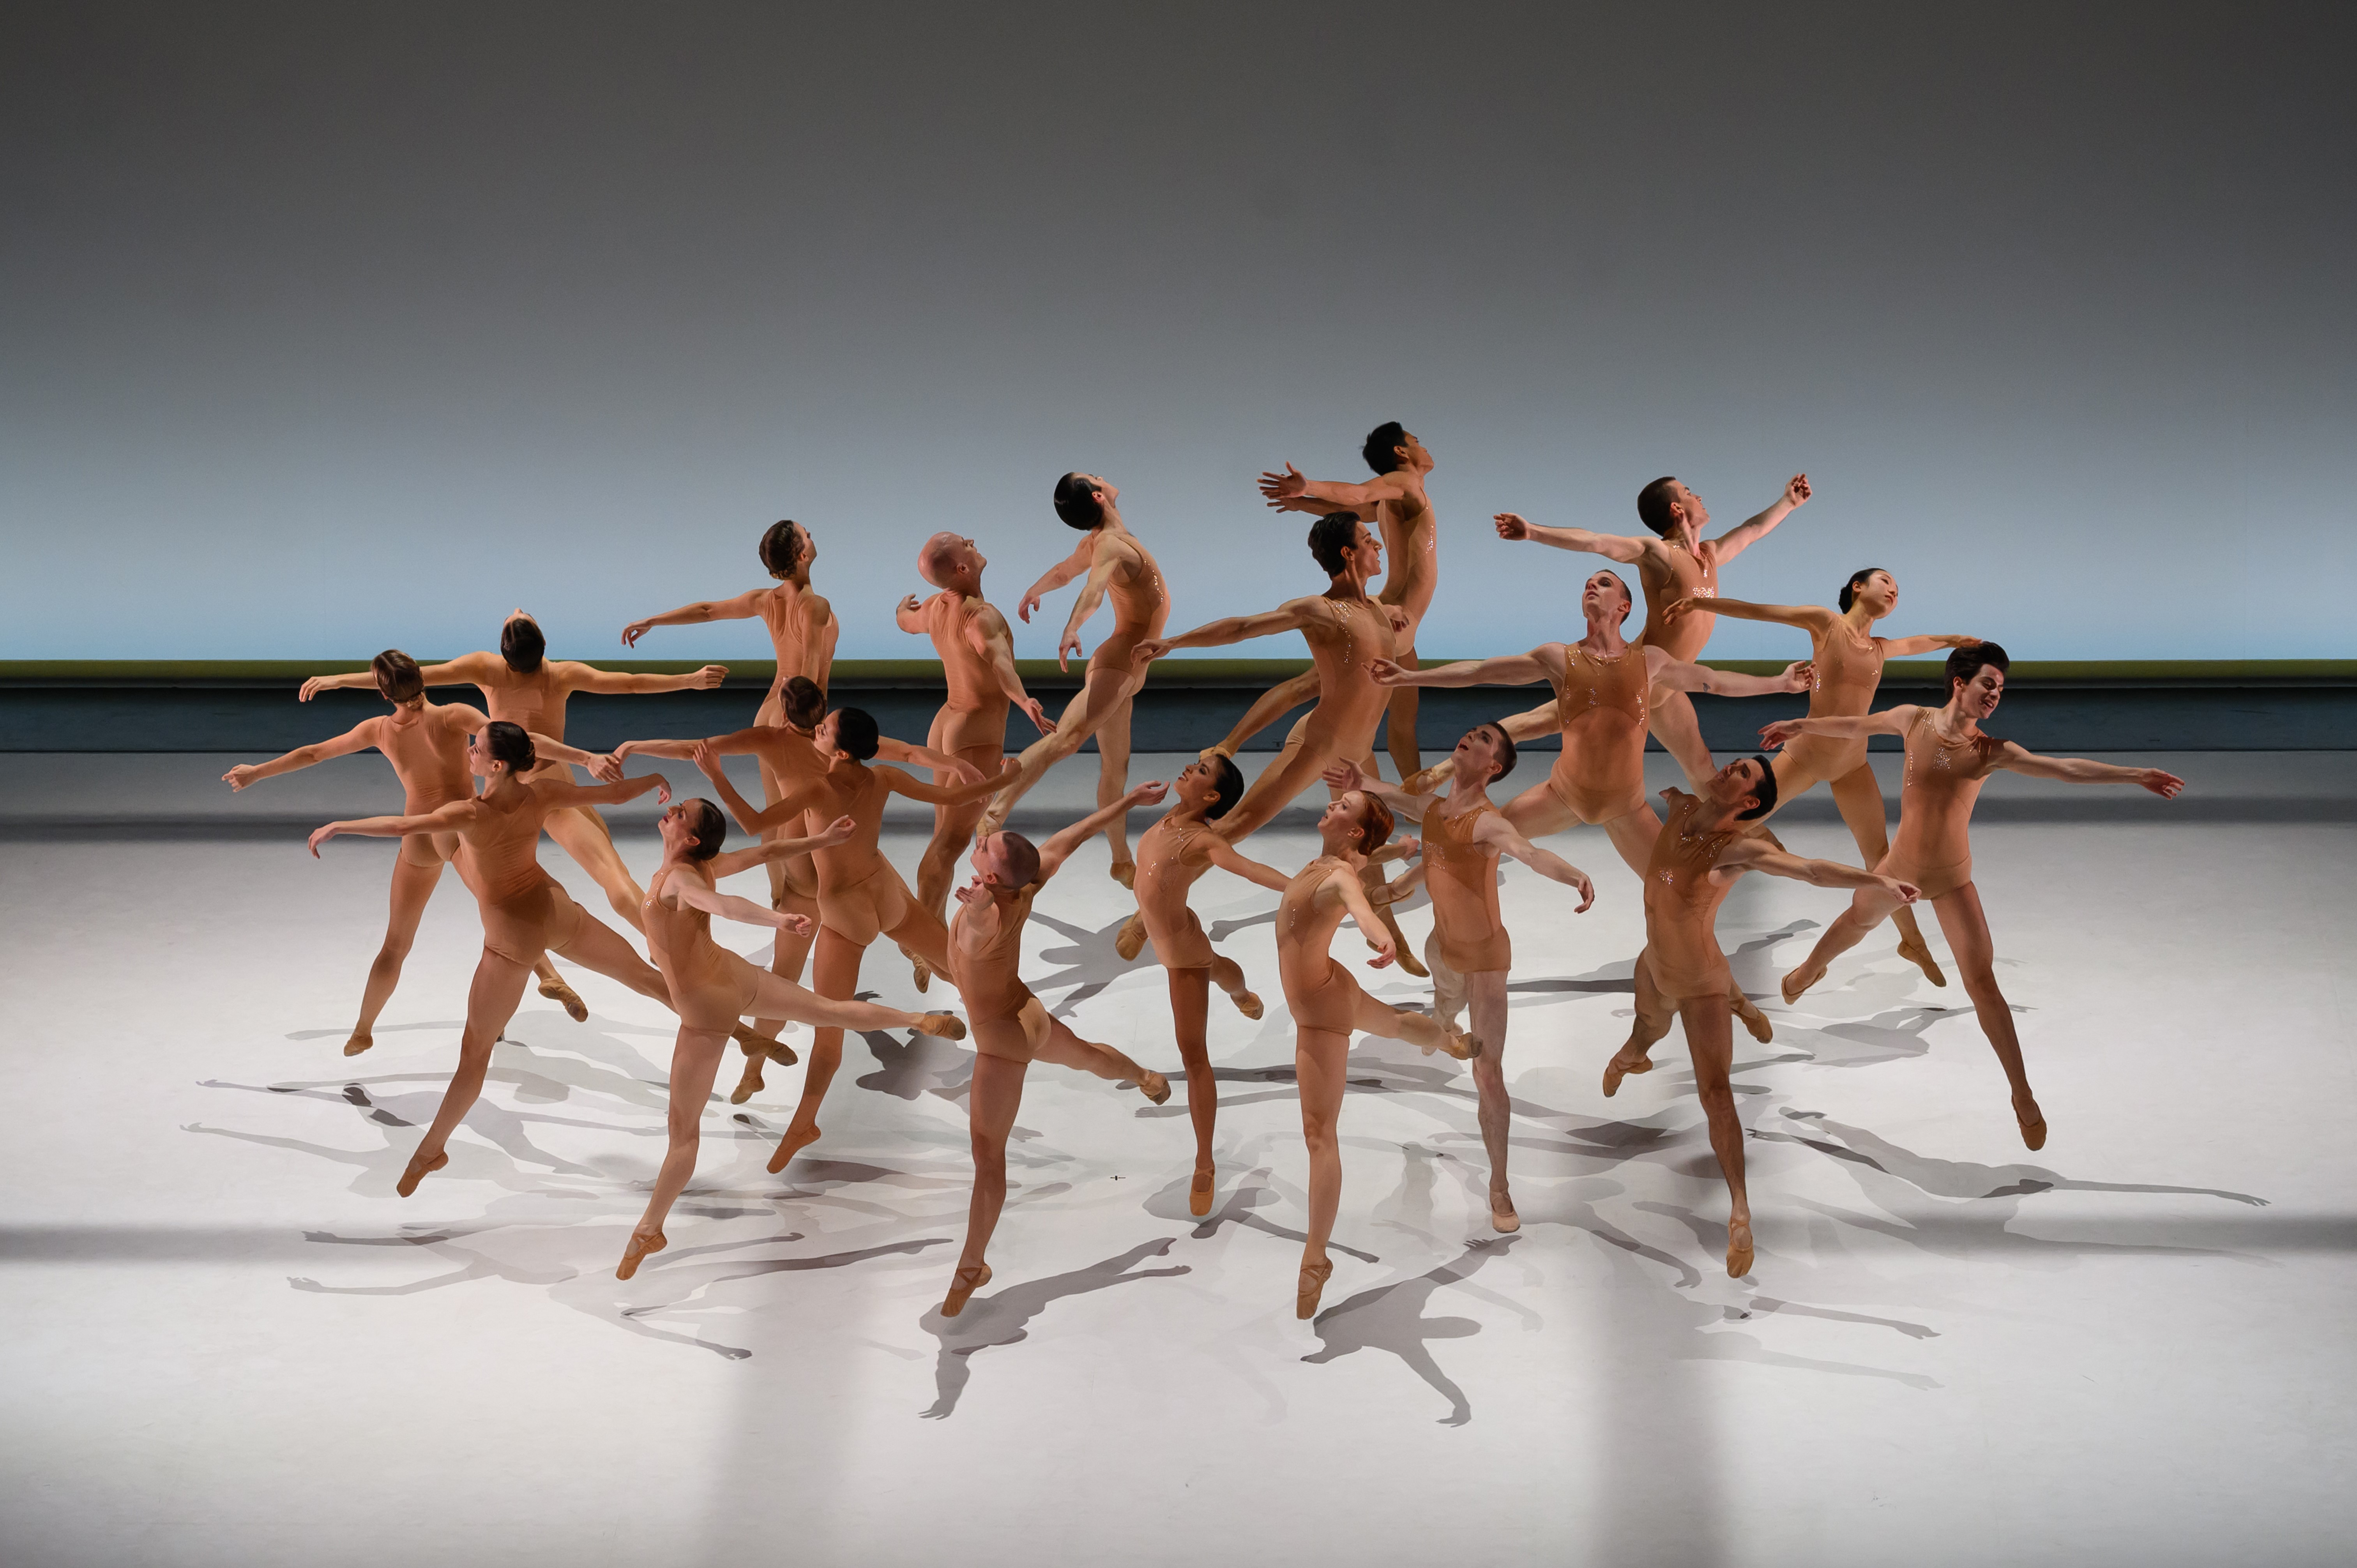 20 danseurs et danseuses sont sur scène. Ils portent tous des juste au corps couleurs chaire. Ils forment une ronde. Ils ont tous les bras écartés et la jambe droite tendue en arrière. 